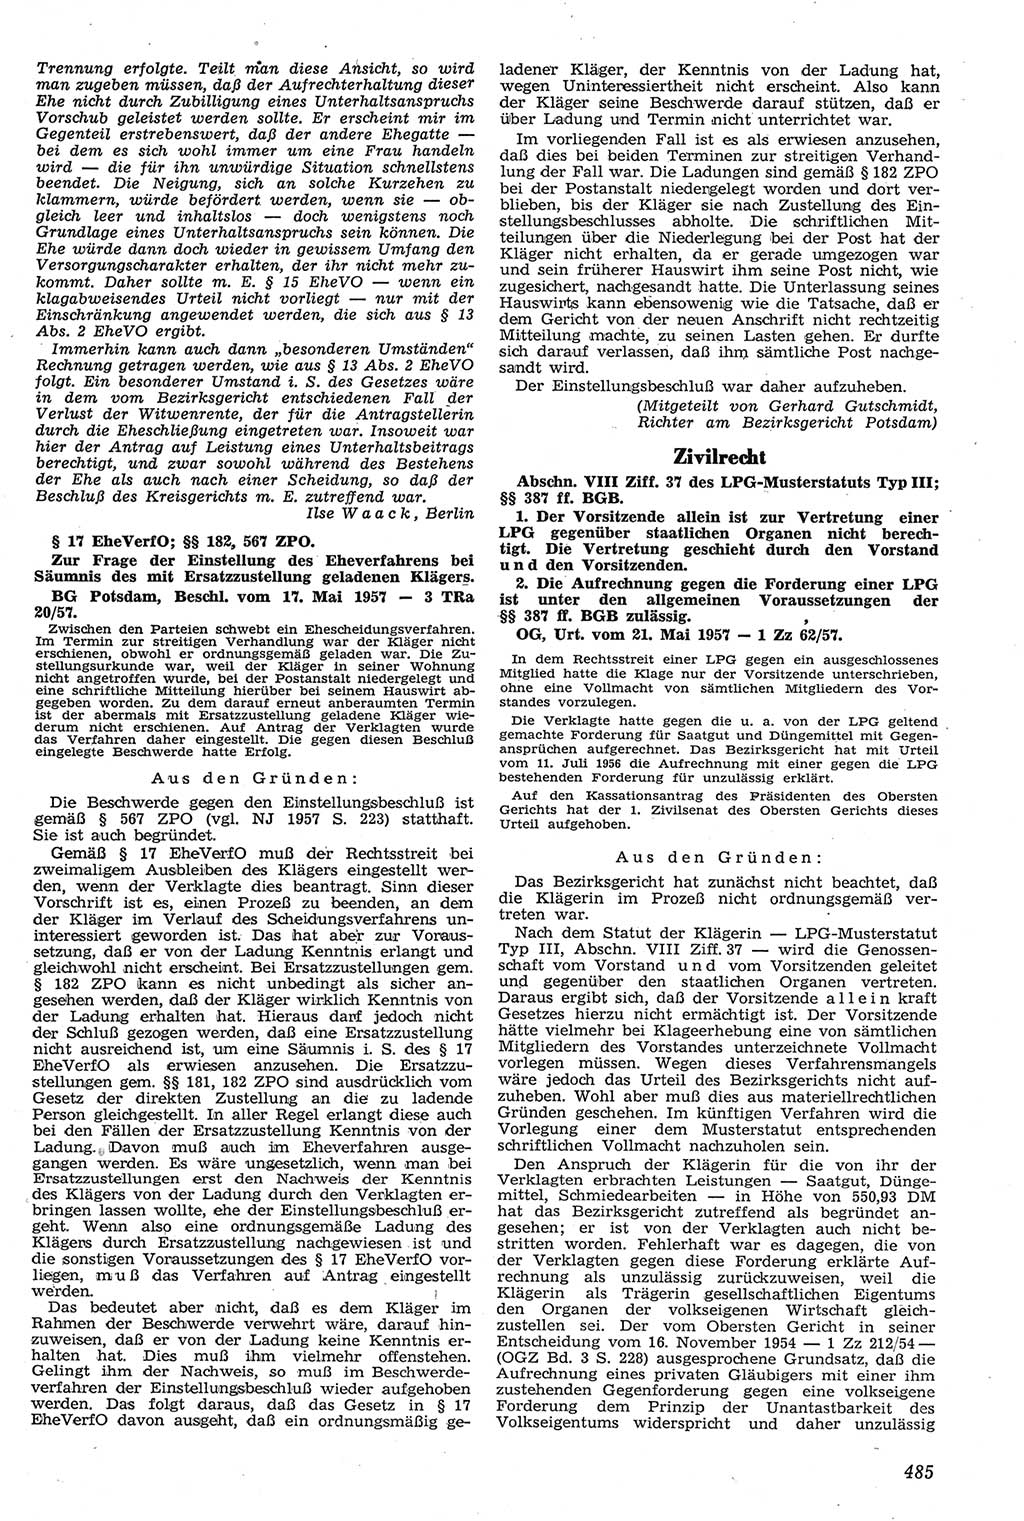 Neue Justiz (NJ), Zeitschrift für Recht und Rechtswissenschaft [Deutsche Demokratische Republik (DDR)], 11. Jahrgang 1957, Seite 485 (NJ DDR 1957, S. 485)